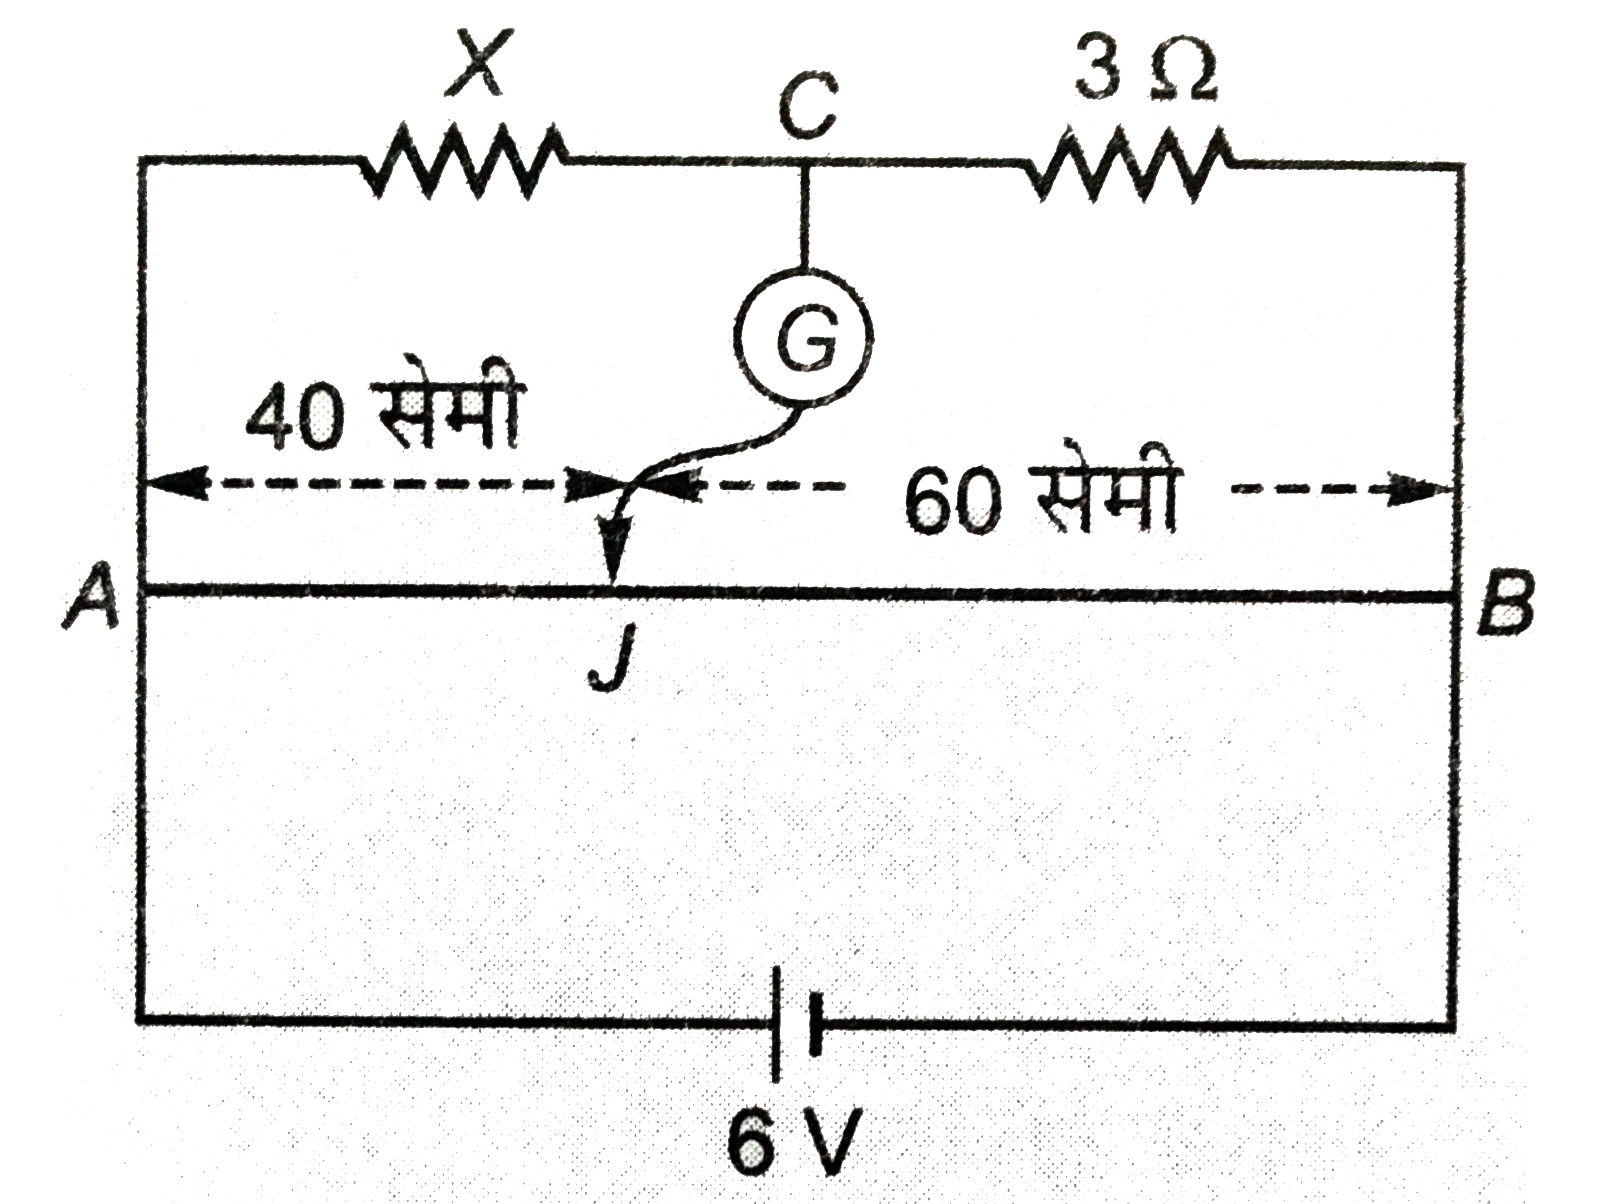 चित्र में प्रदर्शित मीटर सेतु संतुलन की स्थिति में है । सेतु के तार का प्रतरोध 1 ओम/सेमी है । ज्ञात कीजिये - (i ) अज्ञात प्रतिरोध X , (ii) बैटरी से ली गयी धारा , (iii ) प्रतिरोध X में प्रवाहित धारा ।